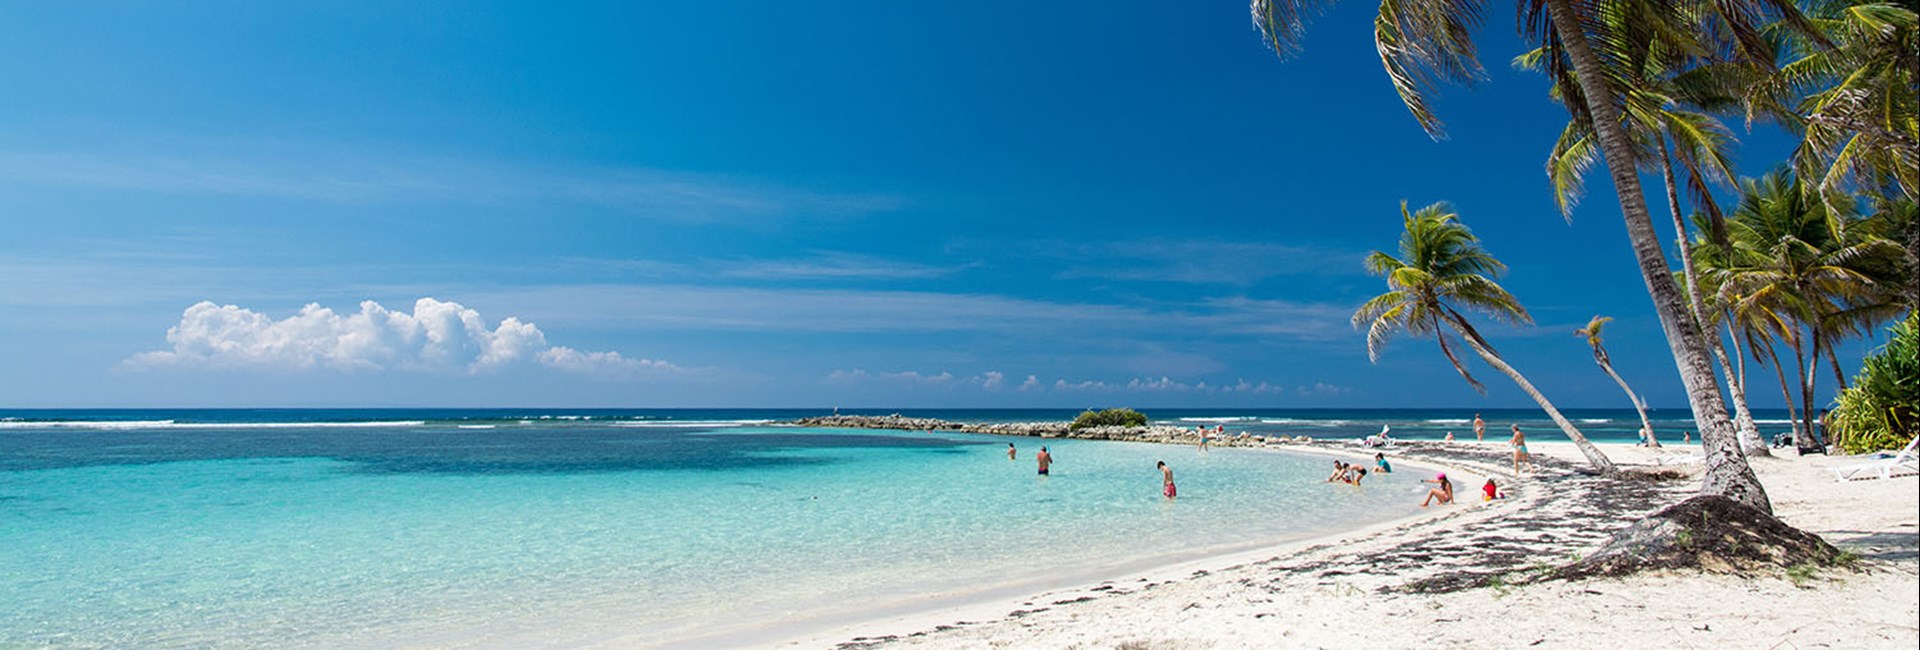 Pristine white sand beach in a sunny tropical destination